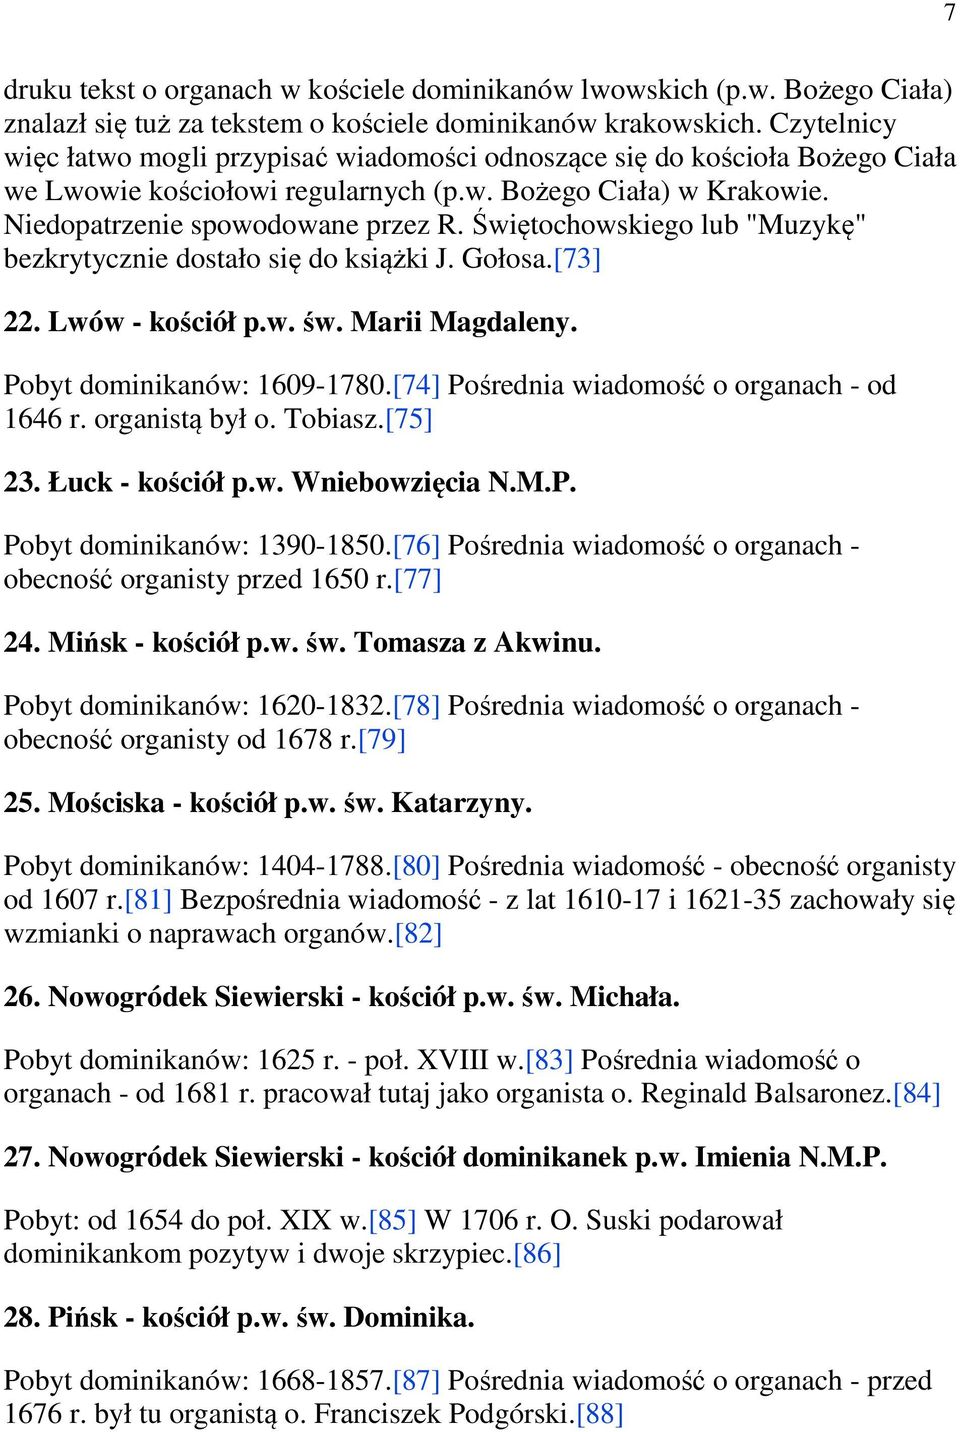 Świętochowskiego lub "Muzykę" bezkrytycznie dostało się do książki J. Gołosa.[73] 22. Lwów - kościół p.w. św. Marii Magdaleny. Pobyt dominikanów: 1609-1780.